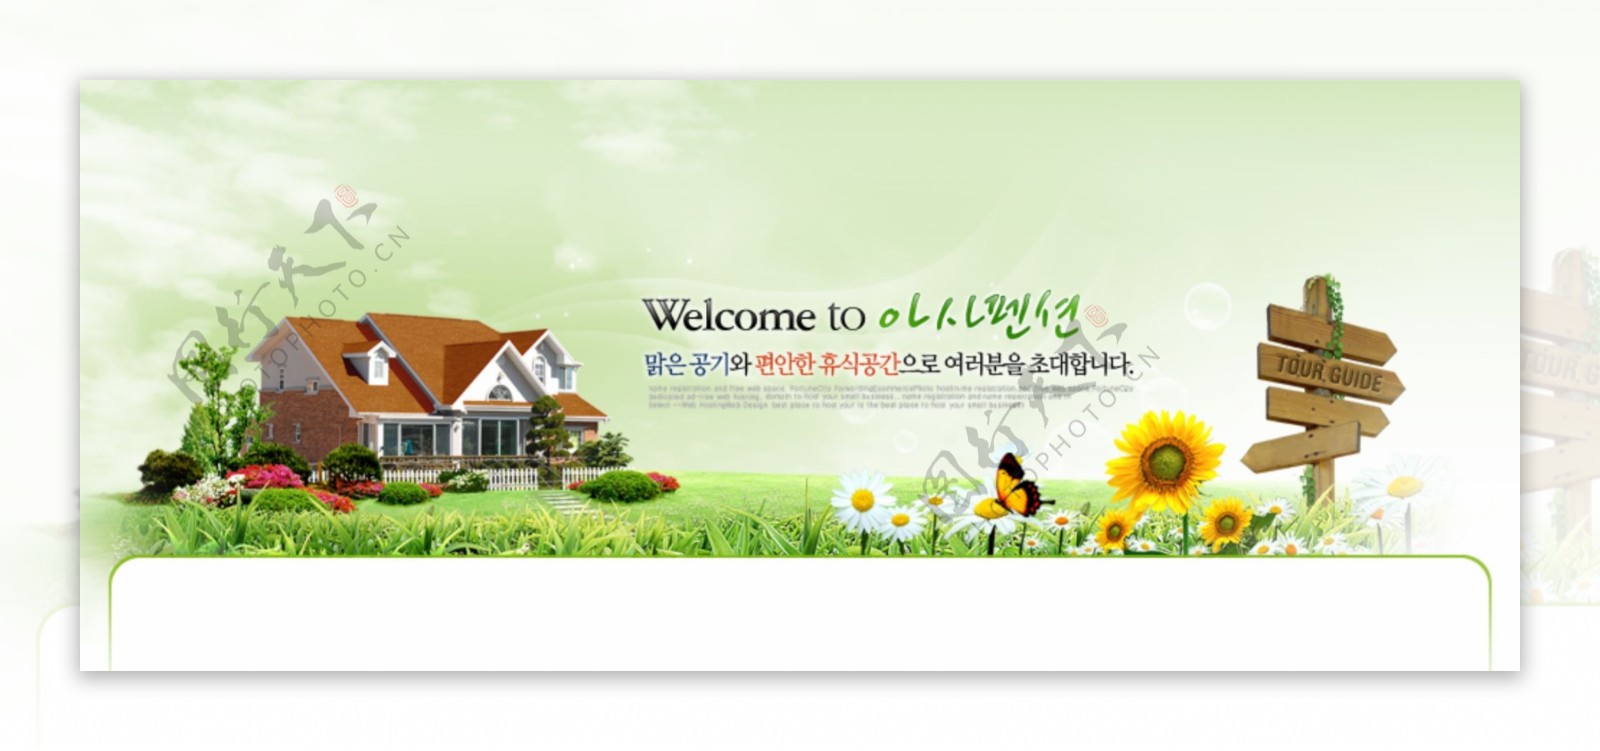 房地产网页banner广告素材图片